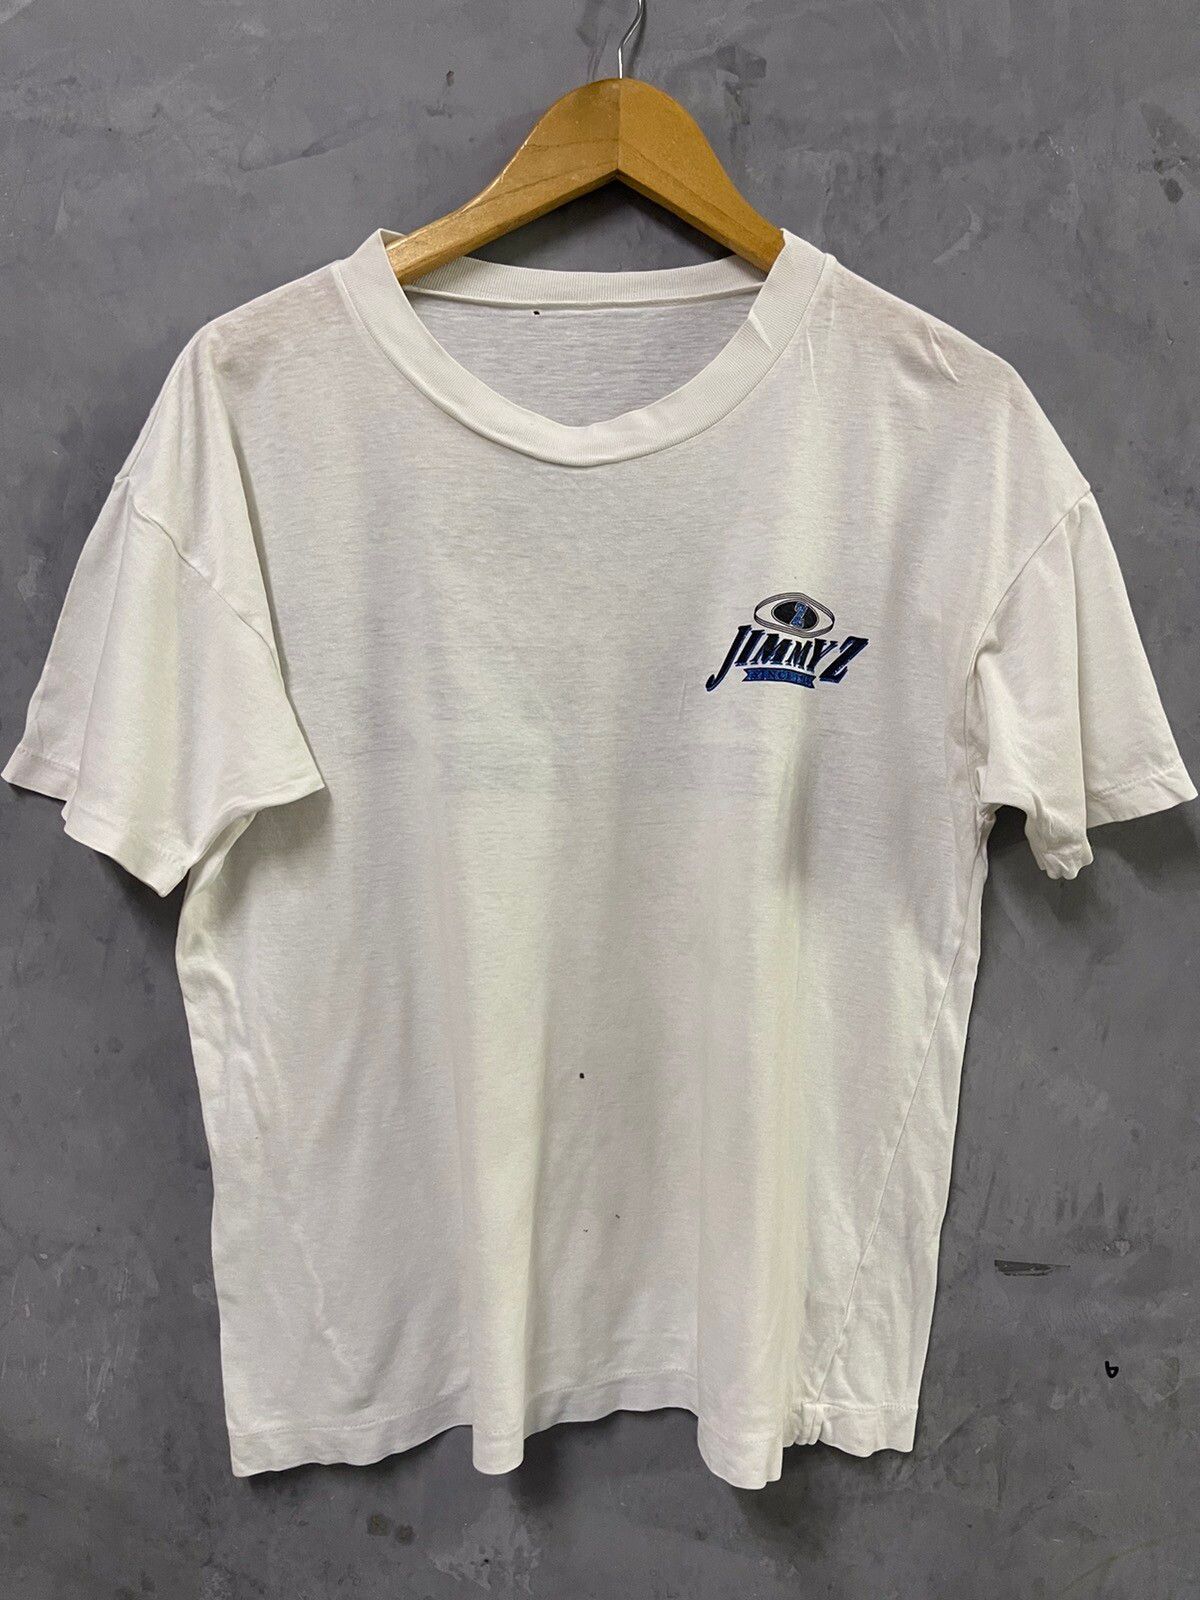 Vintage Vintage JIMMYZ Skateboard Streetwear T-shirt Size US M / EU 48-50 / 2 - 2 Preview